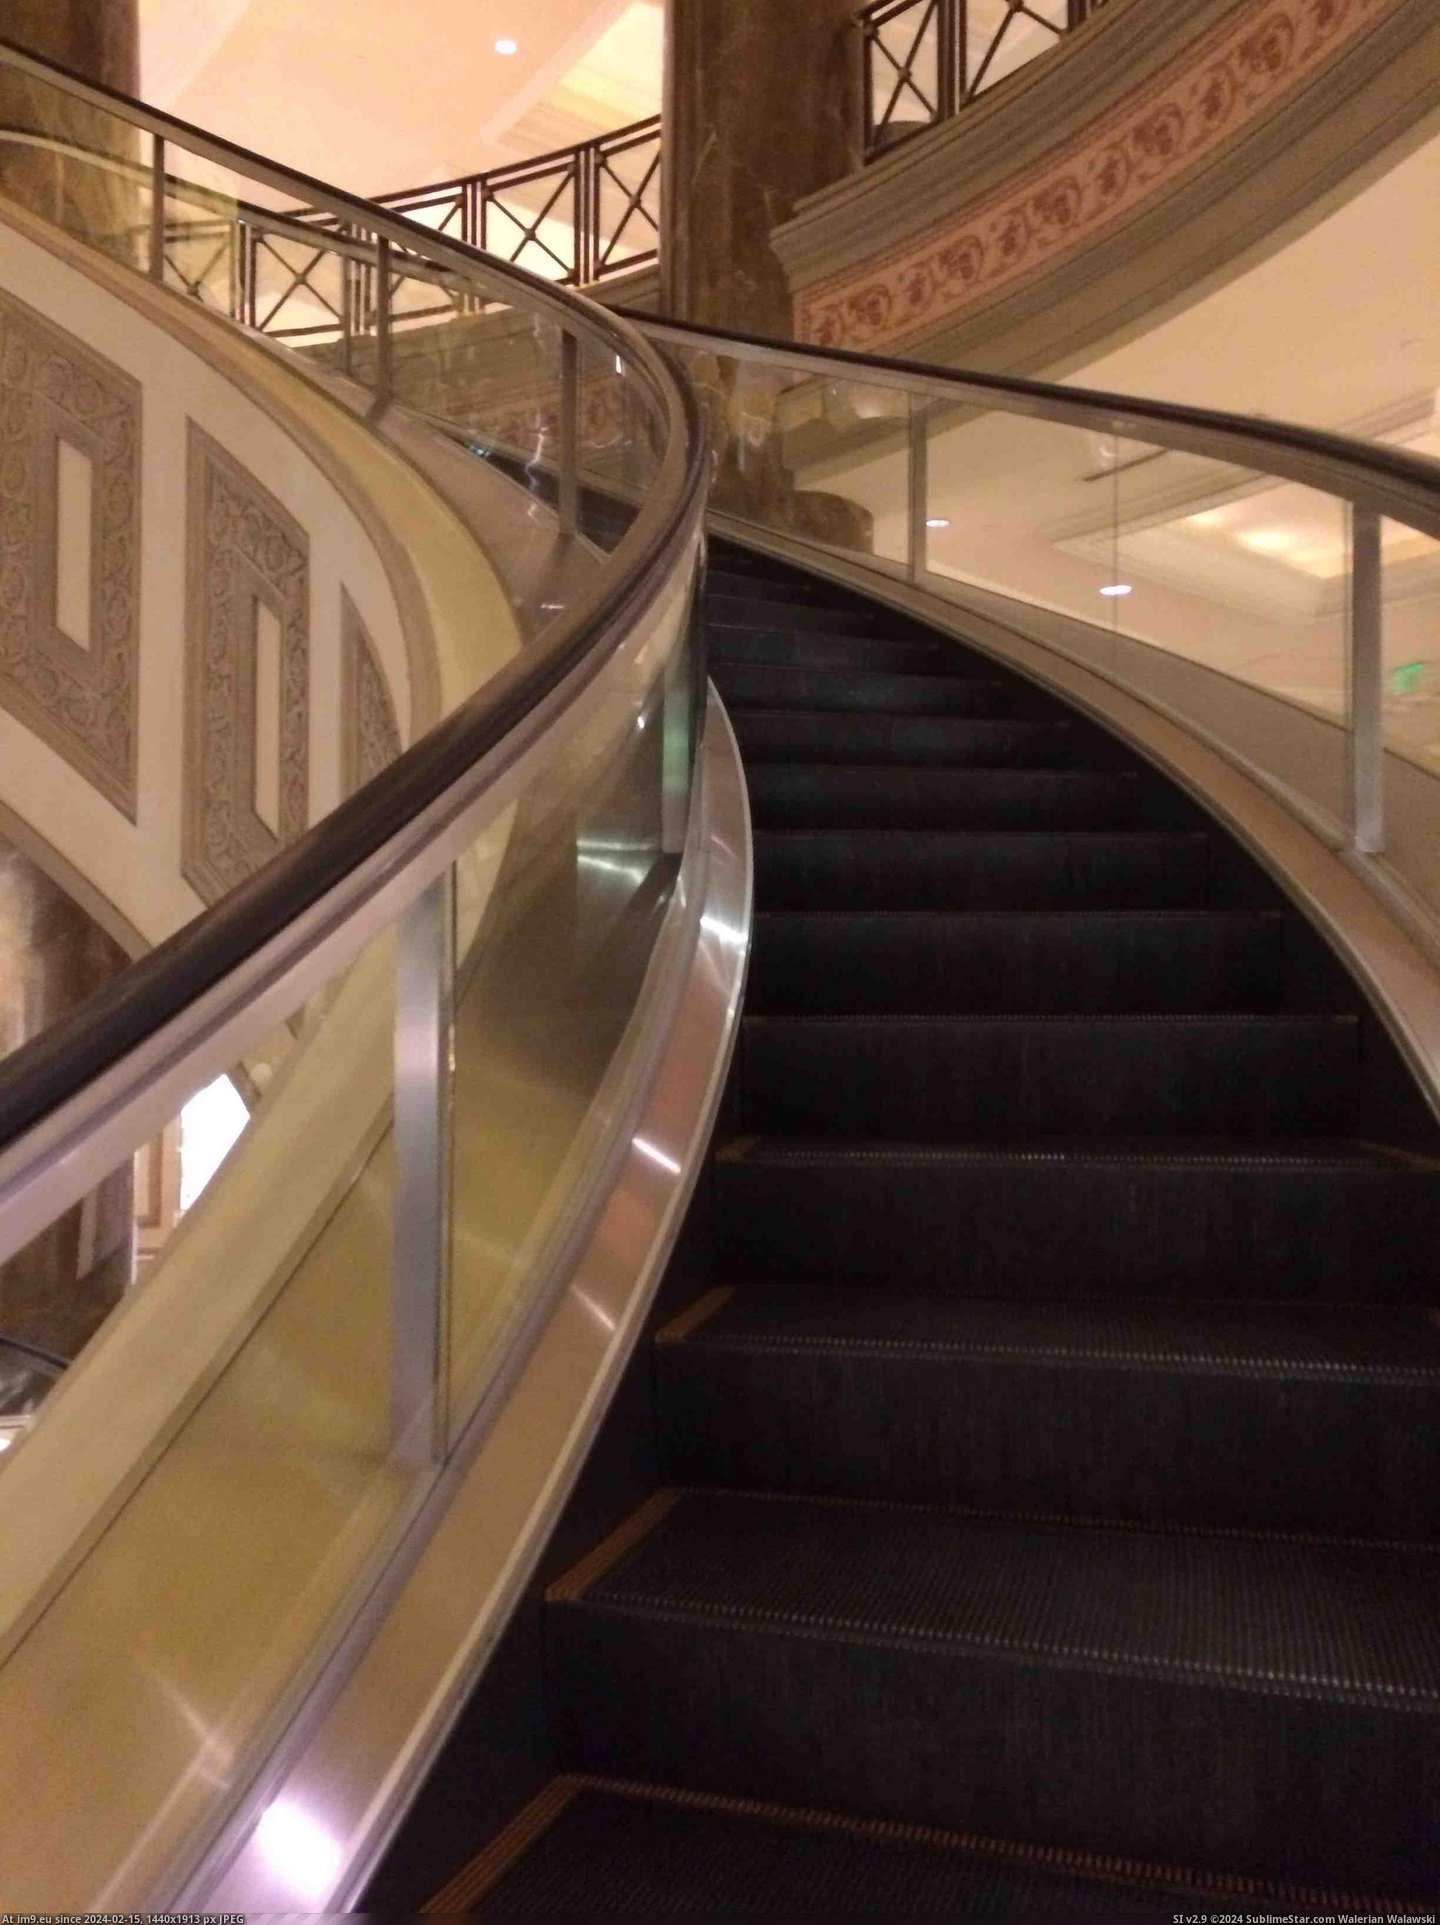 #Hotel #Escalators #Spiral [Mildlyinteresting] My hotel has spiral escalators Pic. (Image of album My r/MILDLYINTERESTING favs))